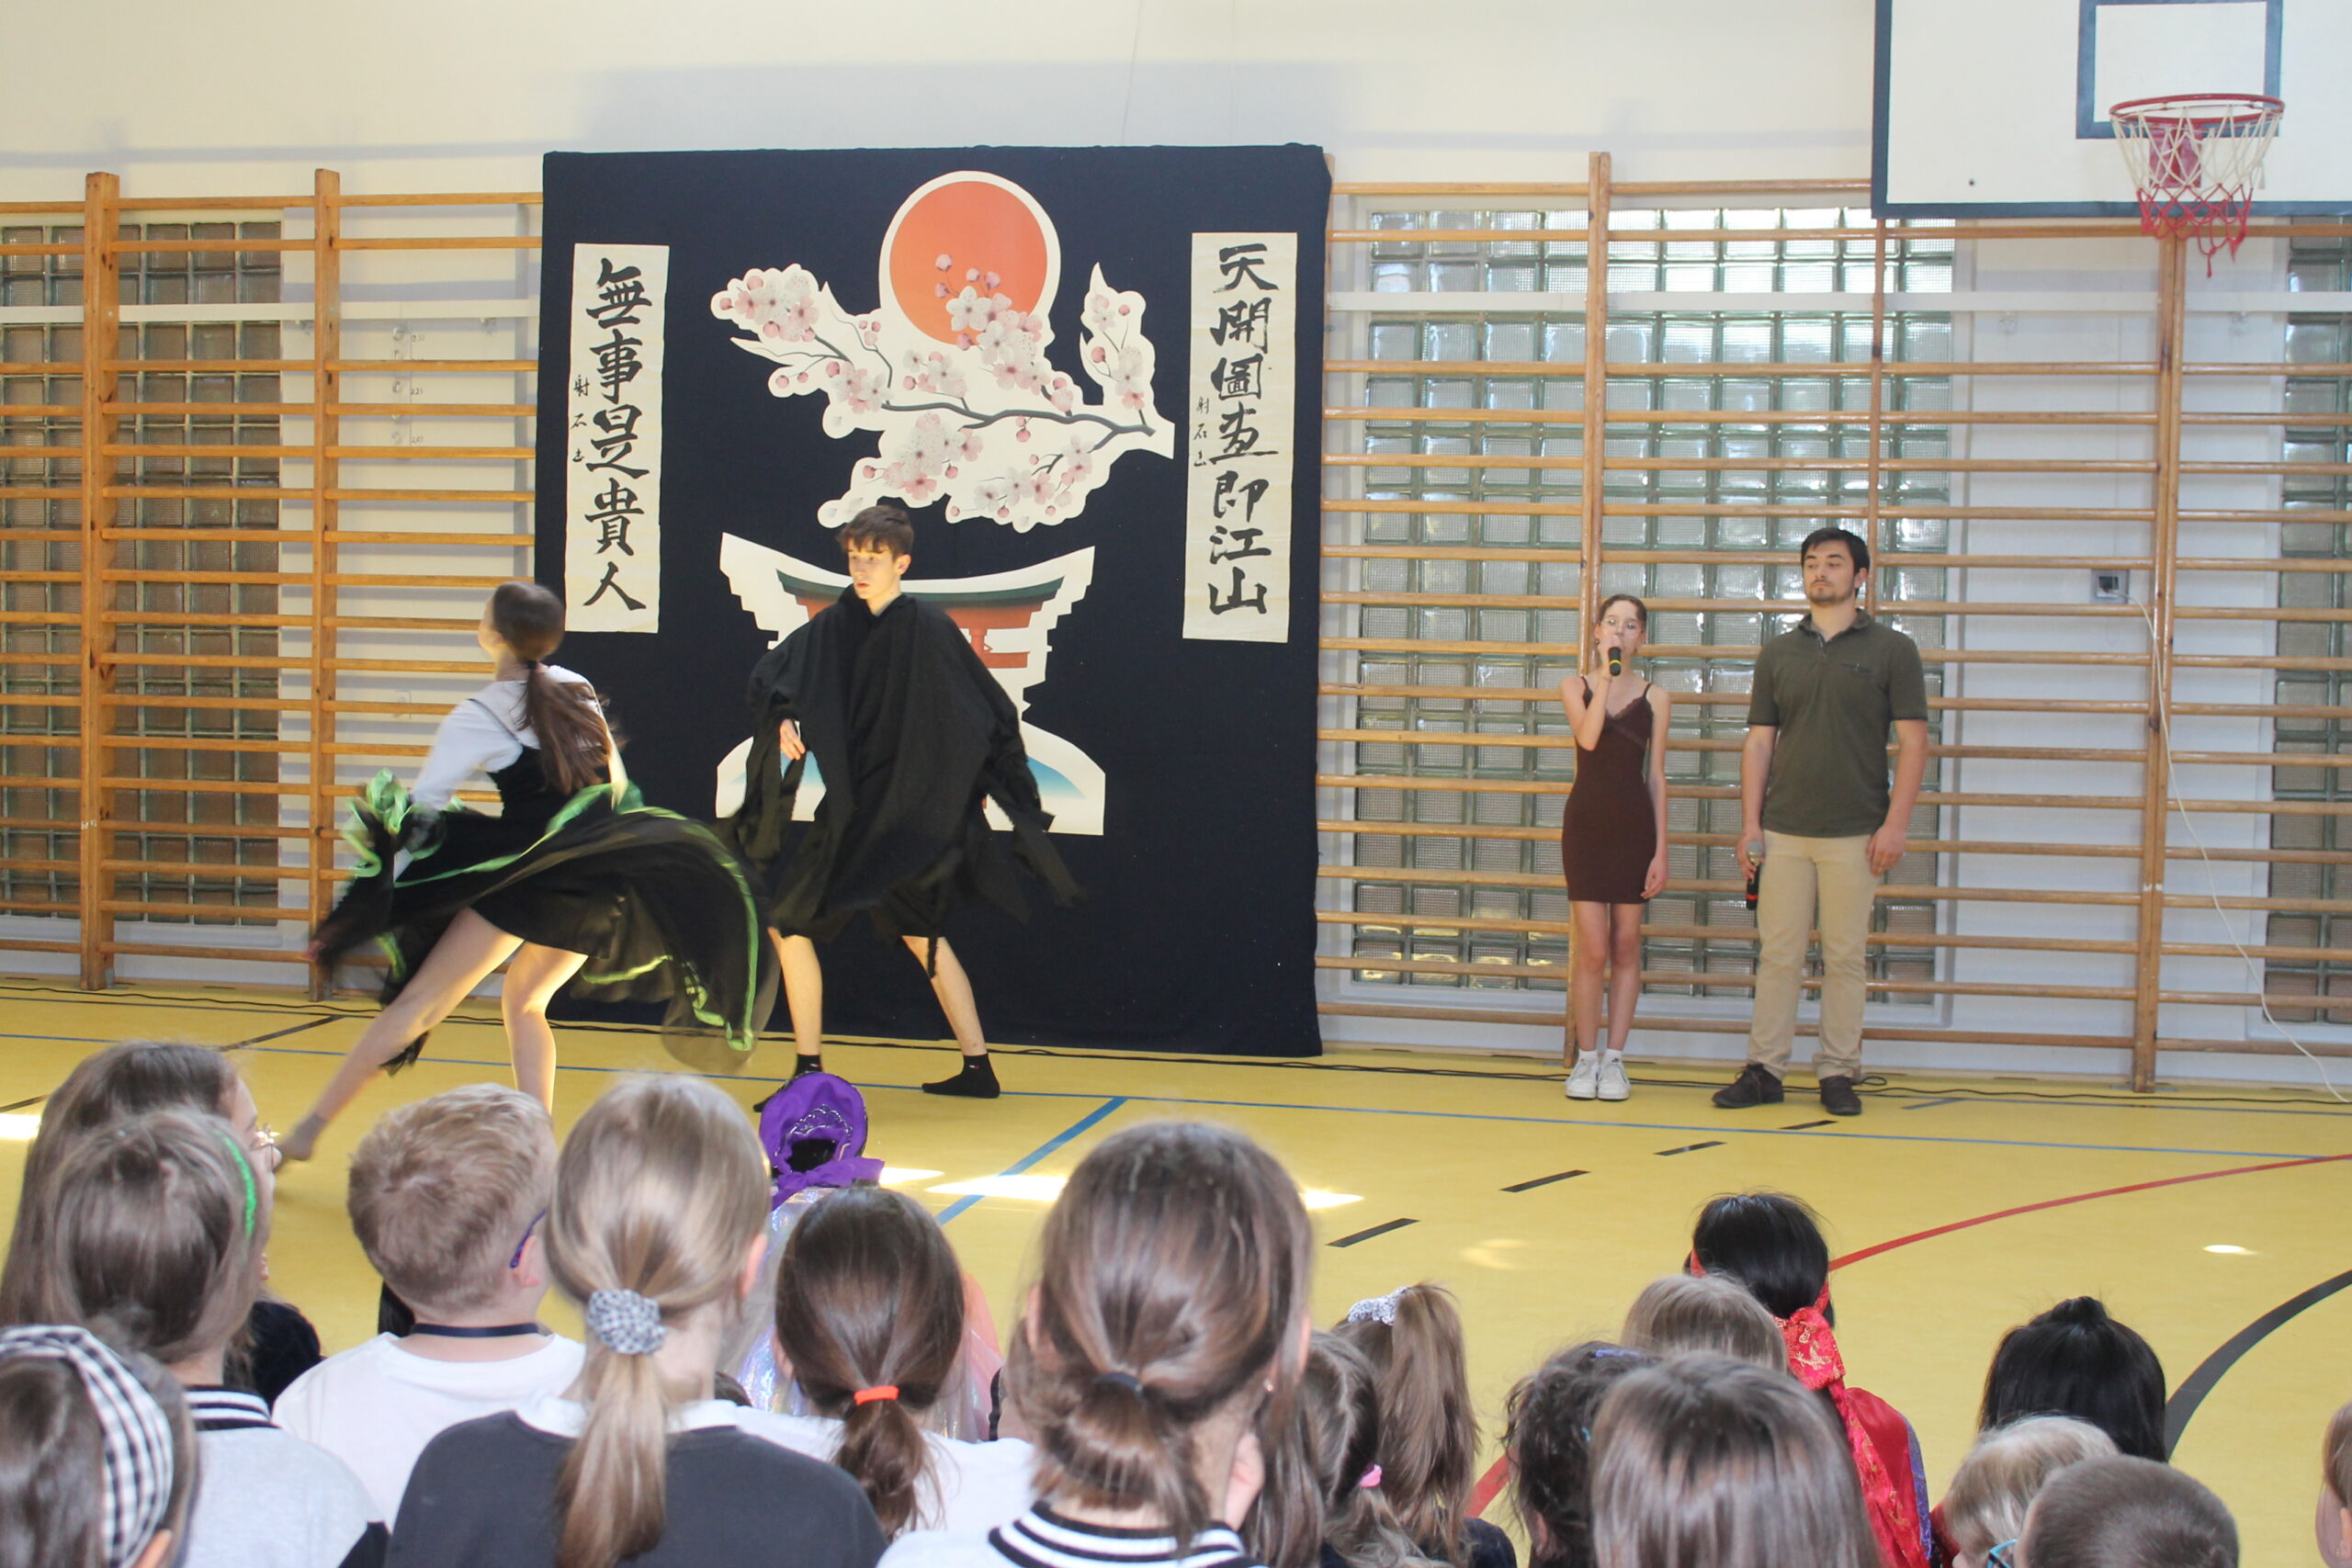 Występ uczniów naszej szkoły podczasa gościnny występ zespołu KIHO z Japonii.